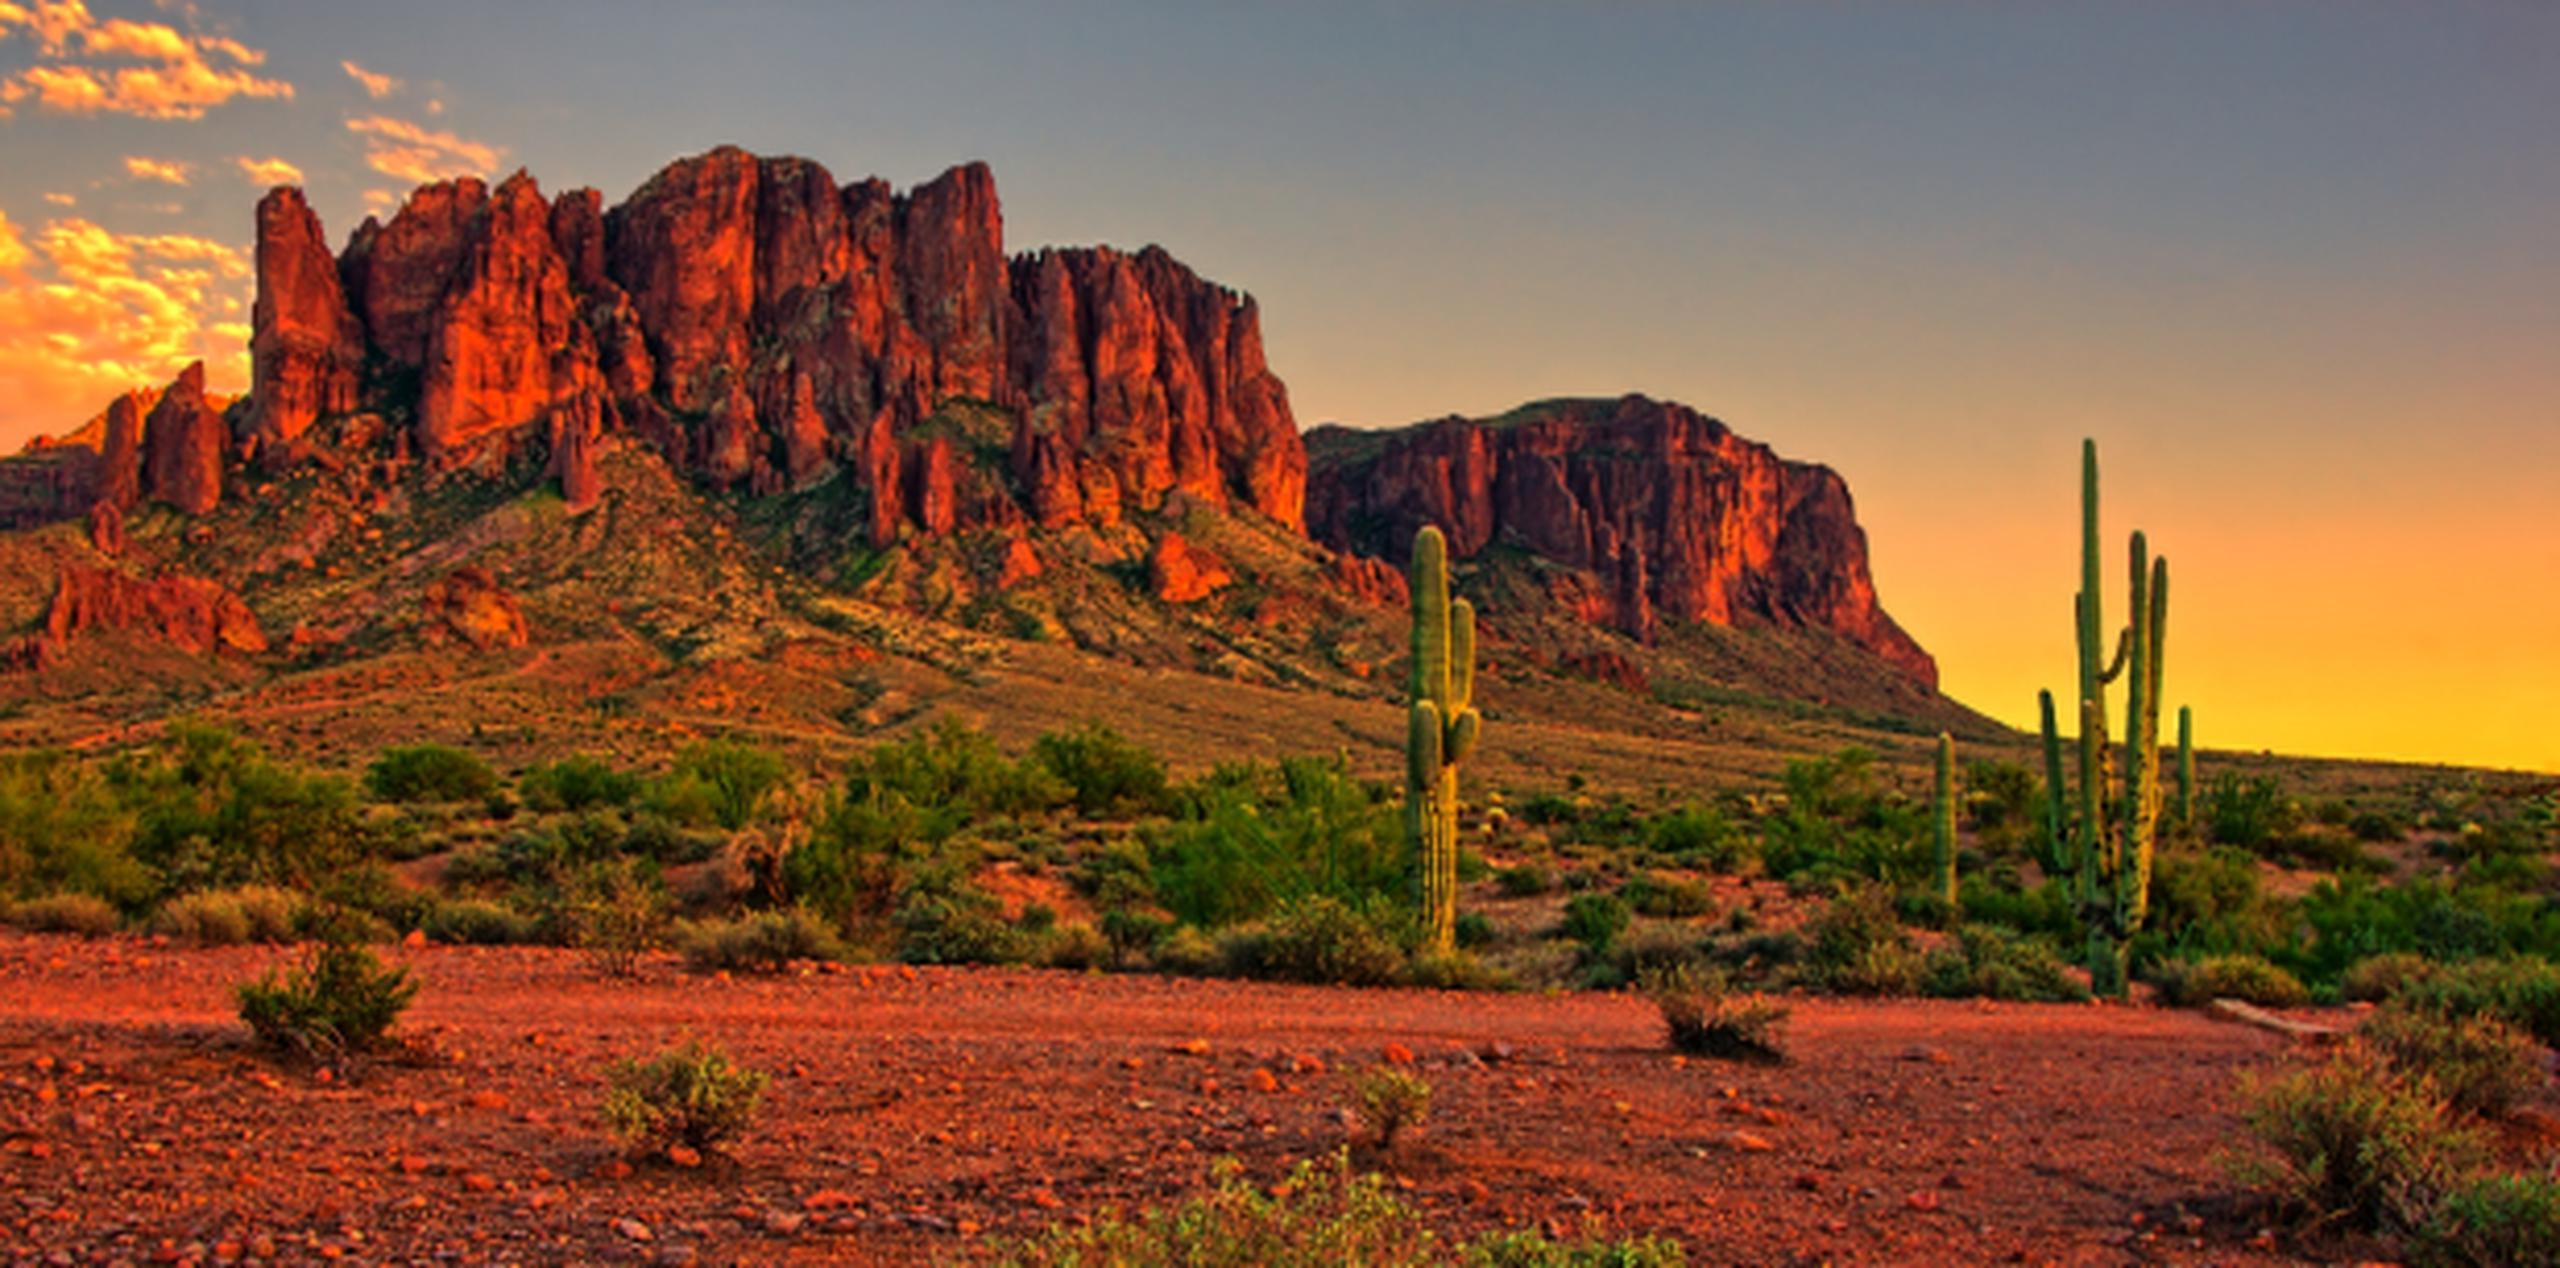 La fiebre del valle se incrementa en las zonas desérticas, y por eso está más presente en Arizona y el Valle Central de California. (Shutterstock)